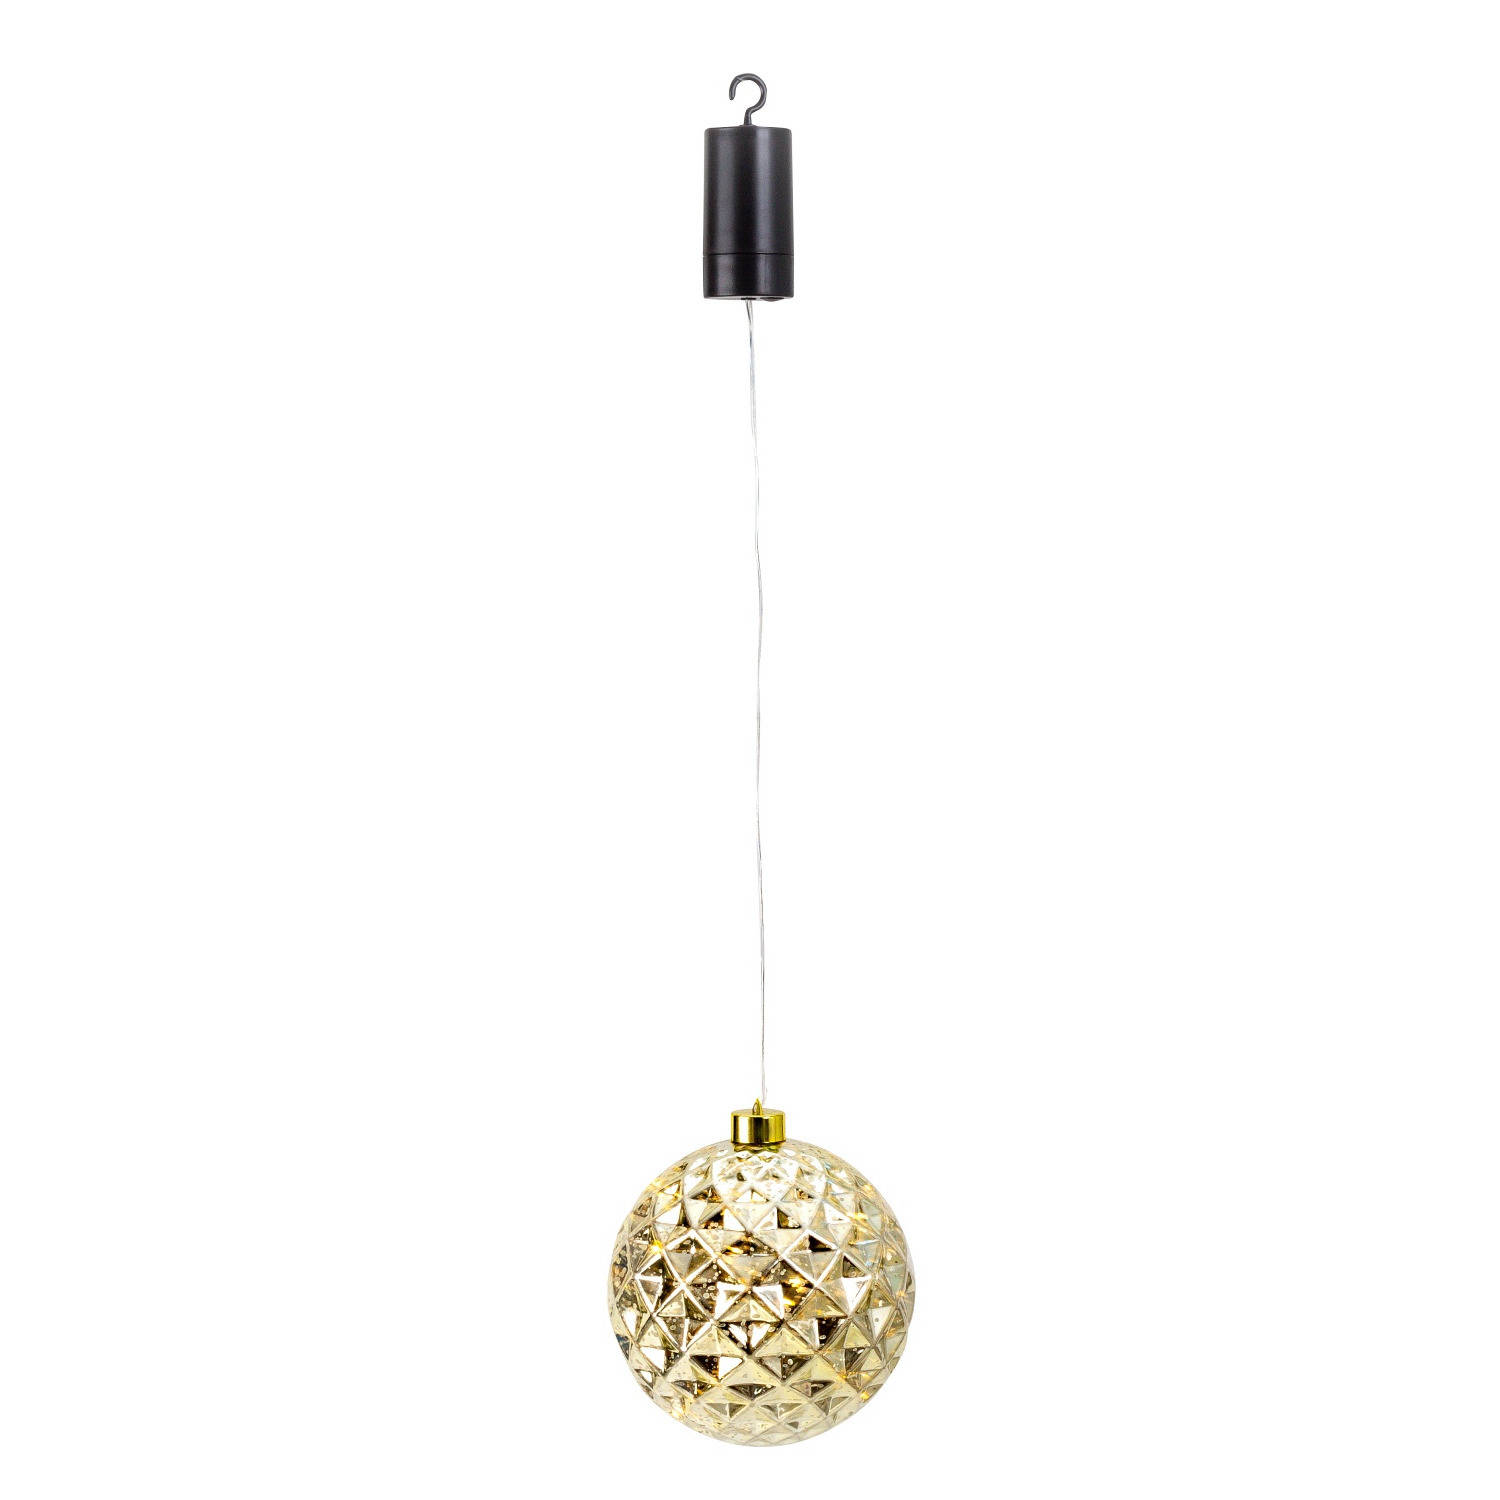 IKO kerstbal goud met led verlichting- D15 cm aan draad kerstverlichting figuur